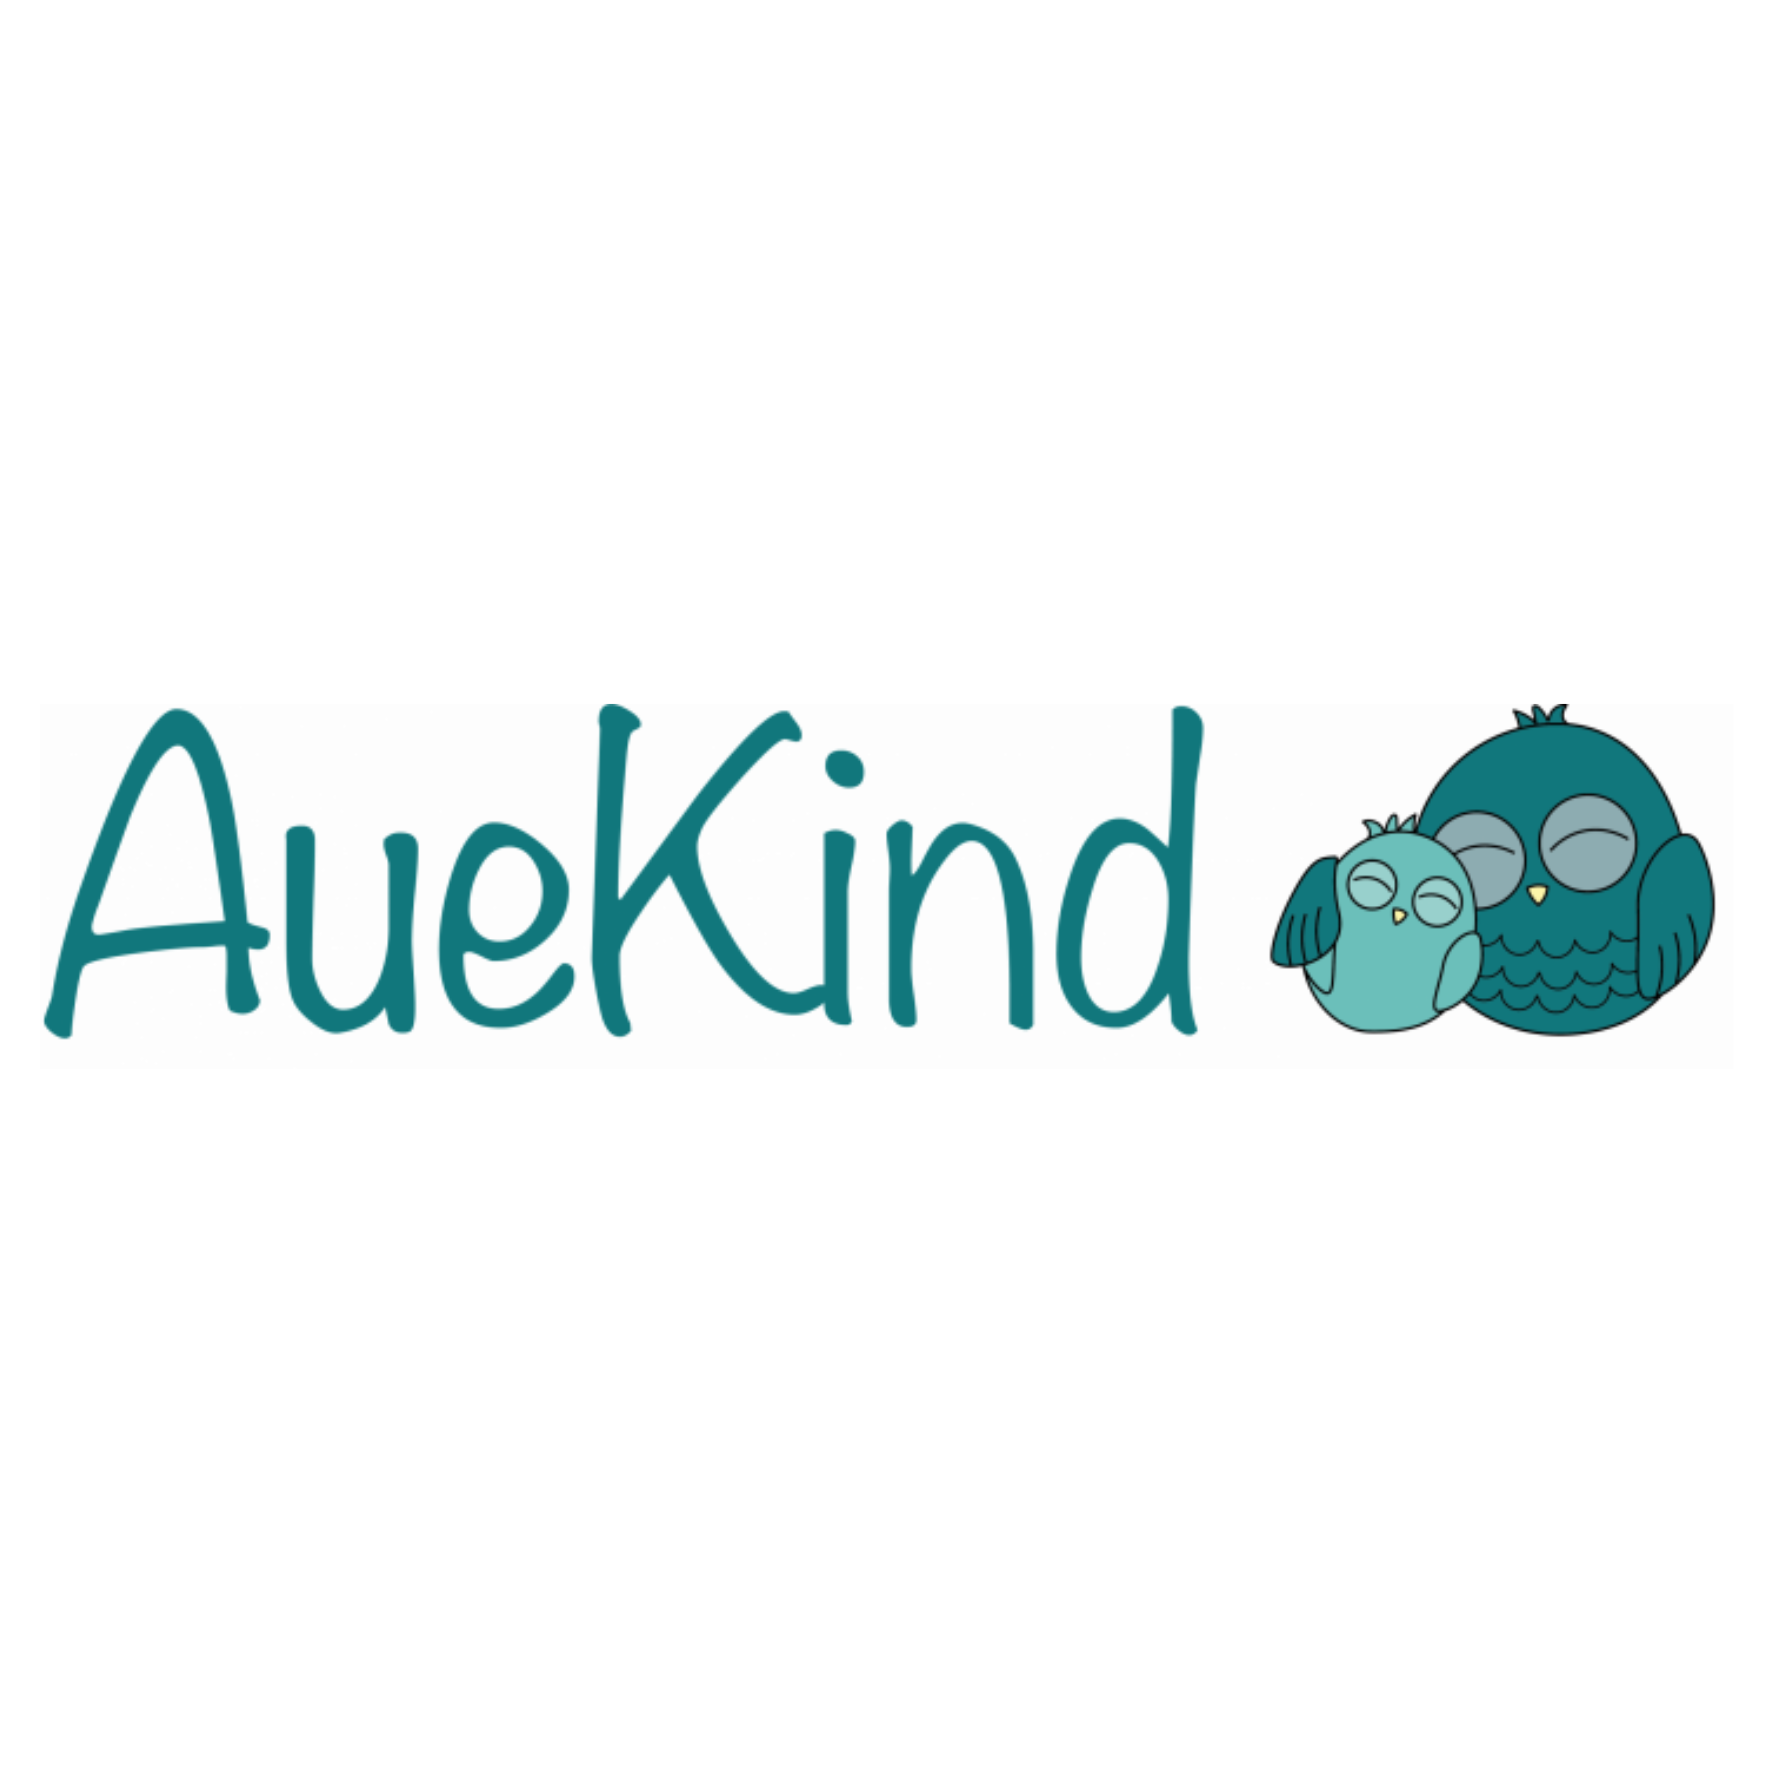 AueKind ist eine fachmännische und individuelle Beratung zum Thema Kindersitze, Tragehilfen oder auch Stoffwindeln in Hannover